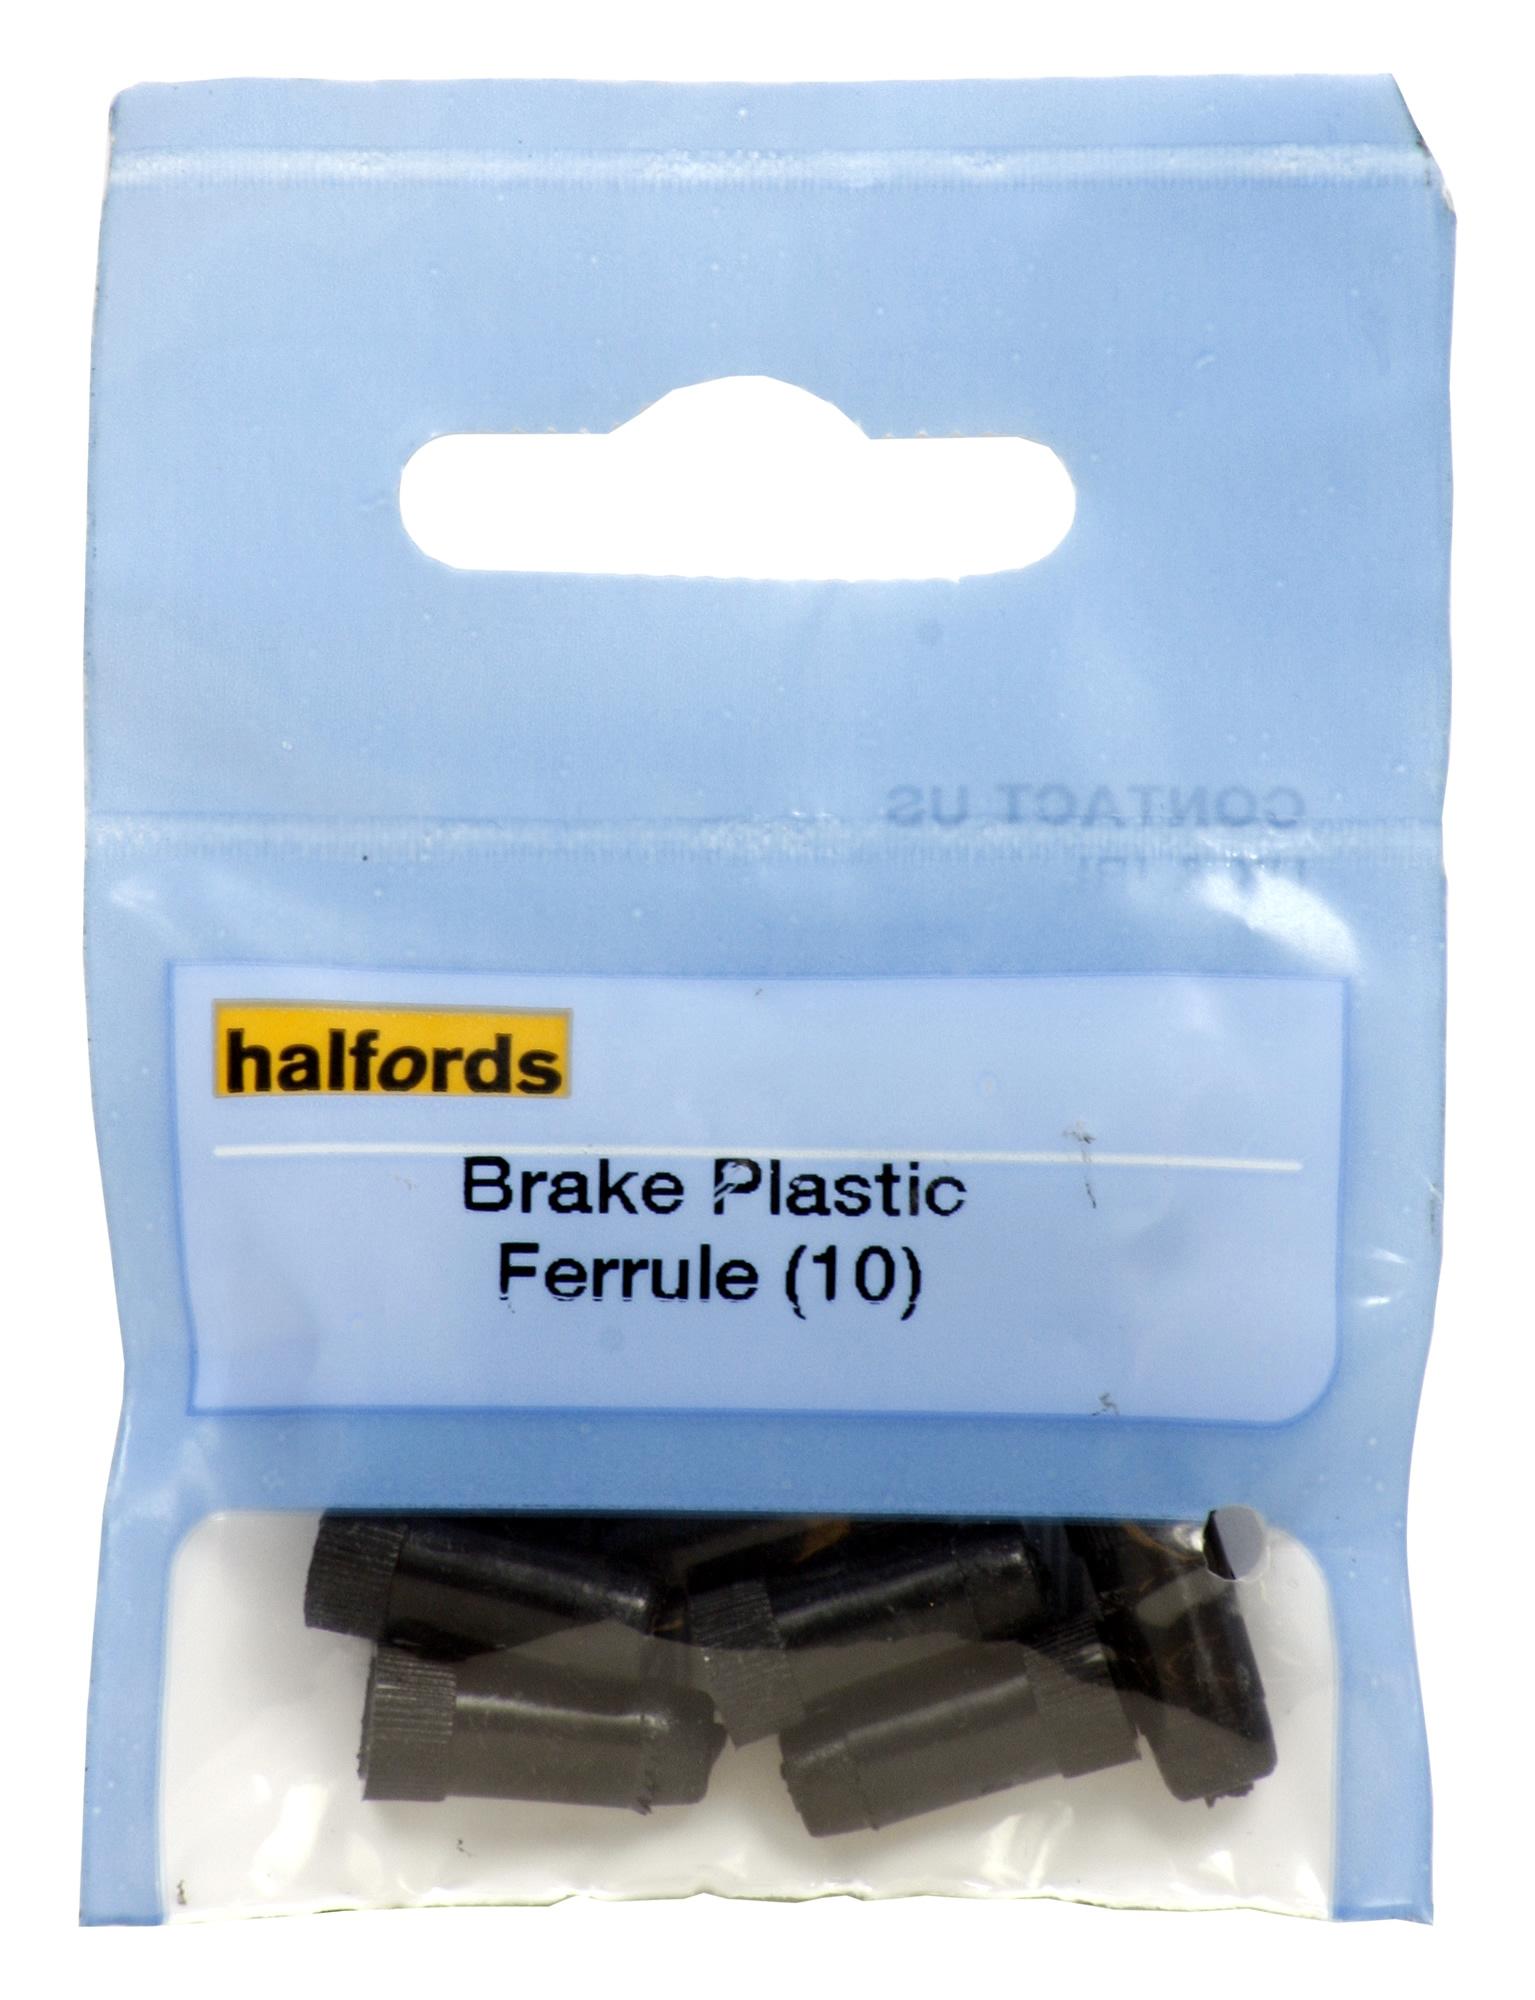 halfords bike brakes